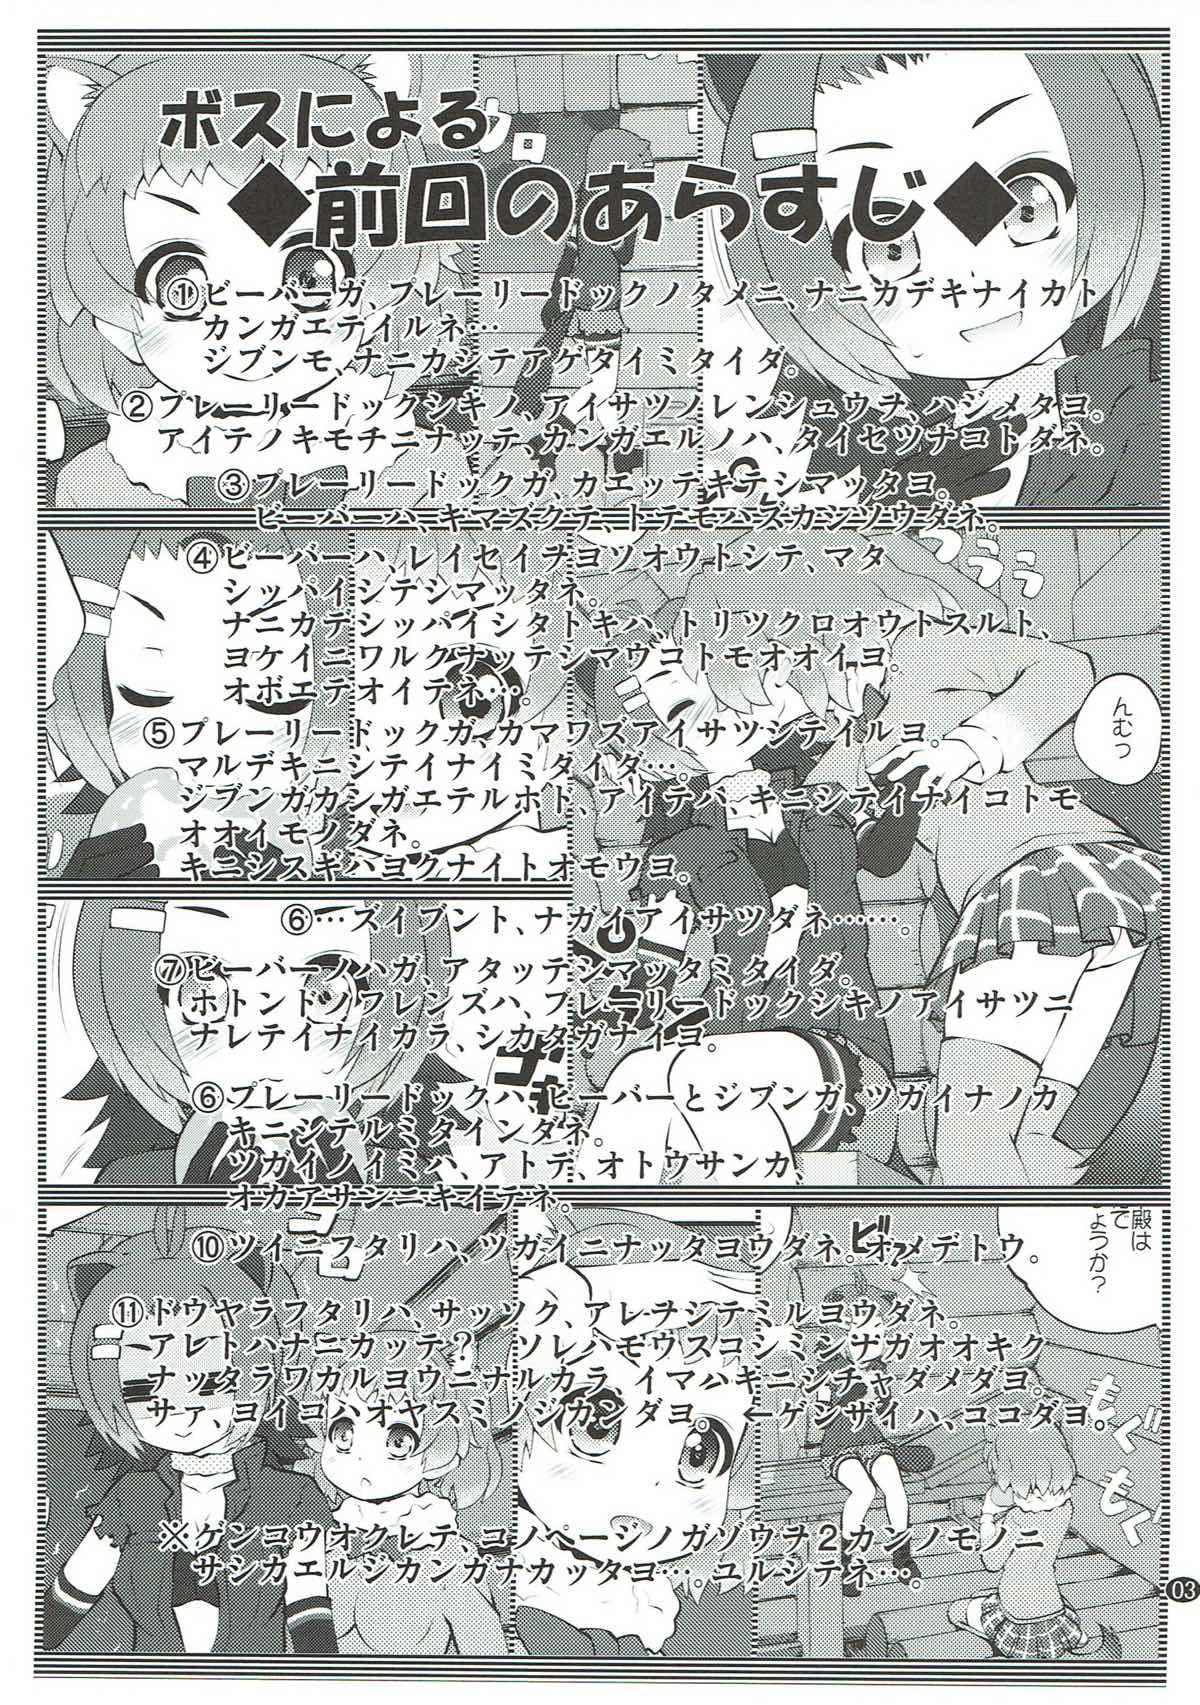 Top Kazoku Keikaku 3 - Kemono friends Underwear - Page 2